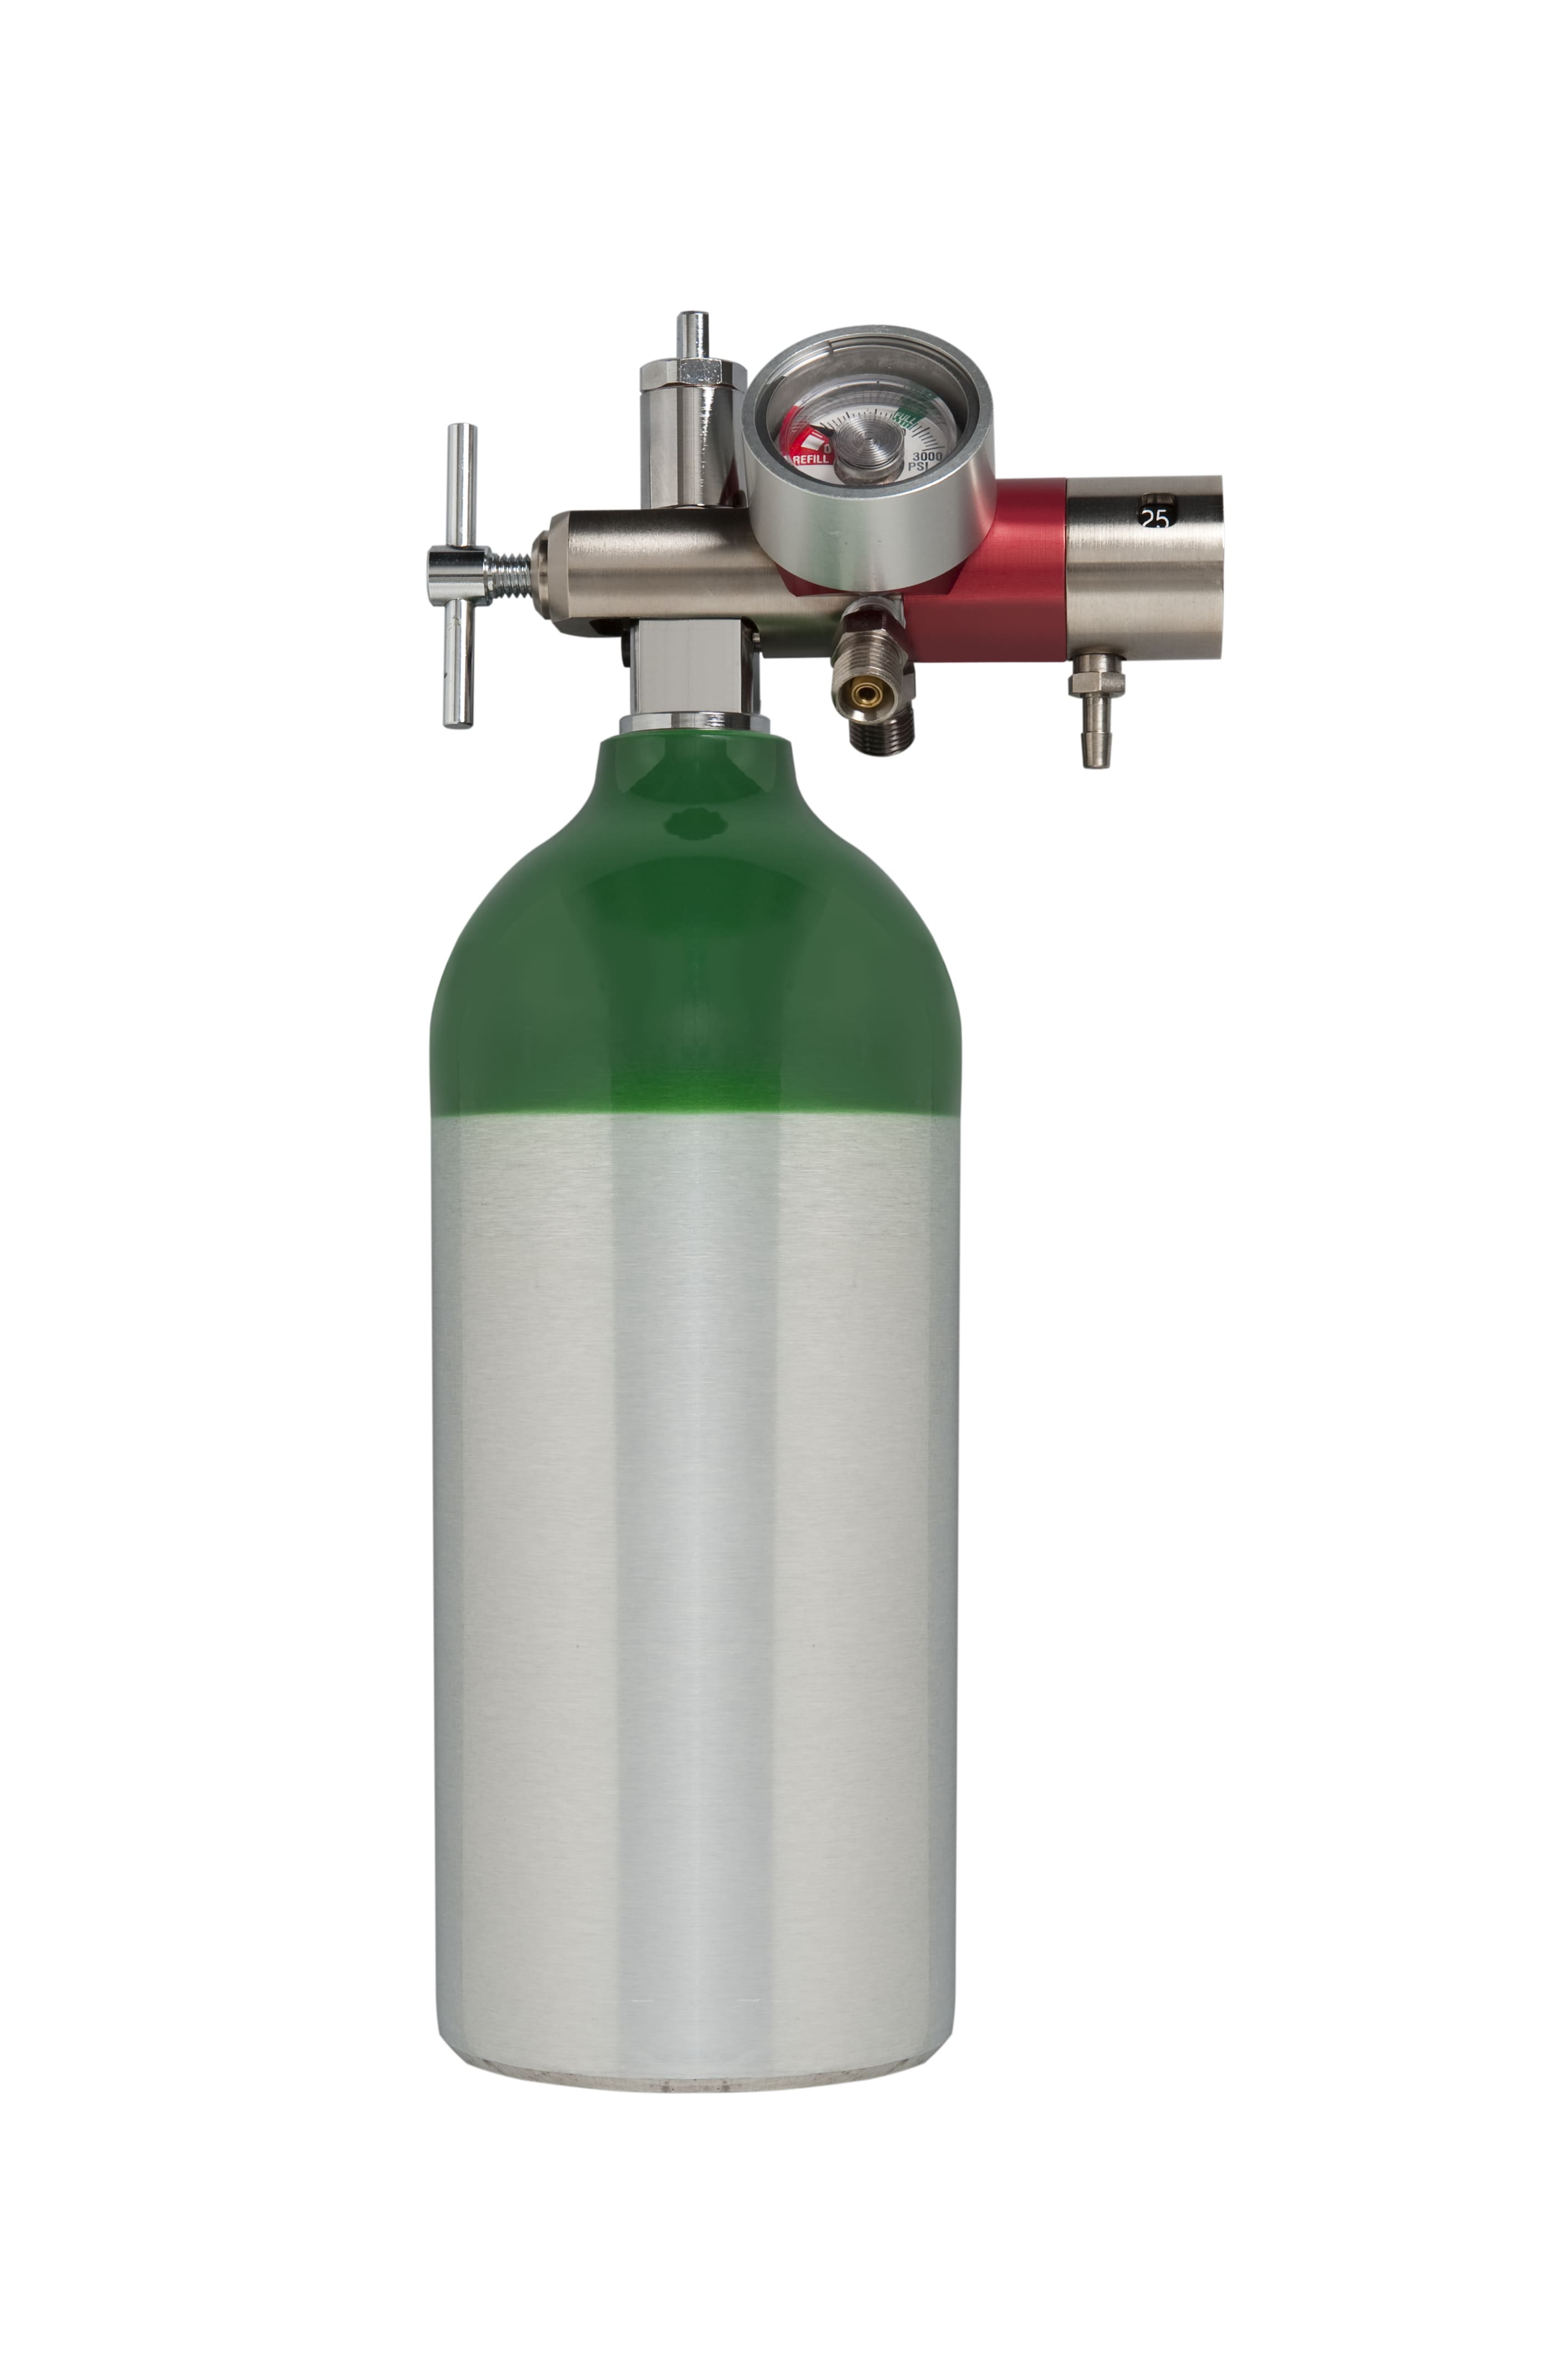 Portable oxygen tank